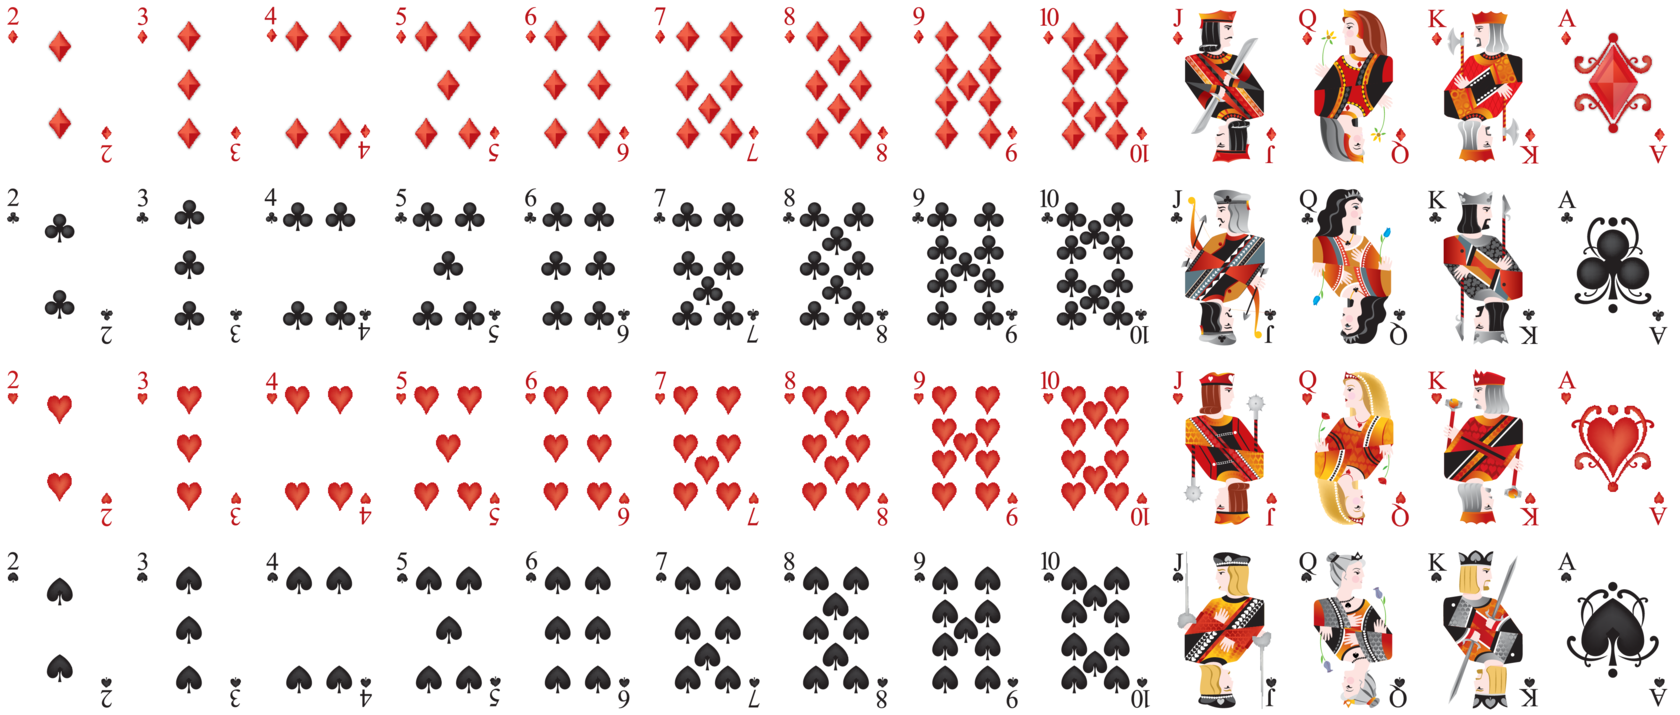 Полный набор карт. Покер колода 52 карты. Игральные карты Покер колода. Колода карт 52 Poker playing Cards Standard. Колода в 52 карты в холдеме.